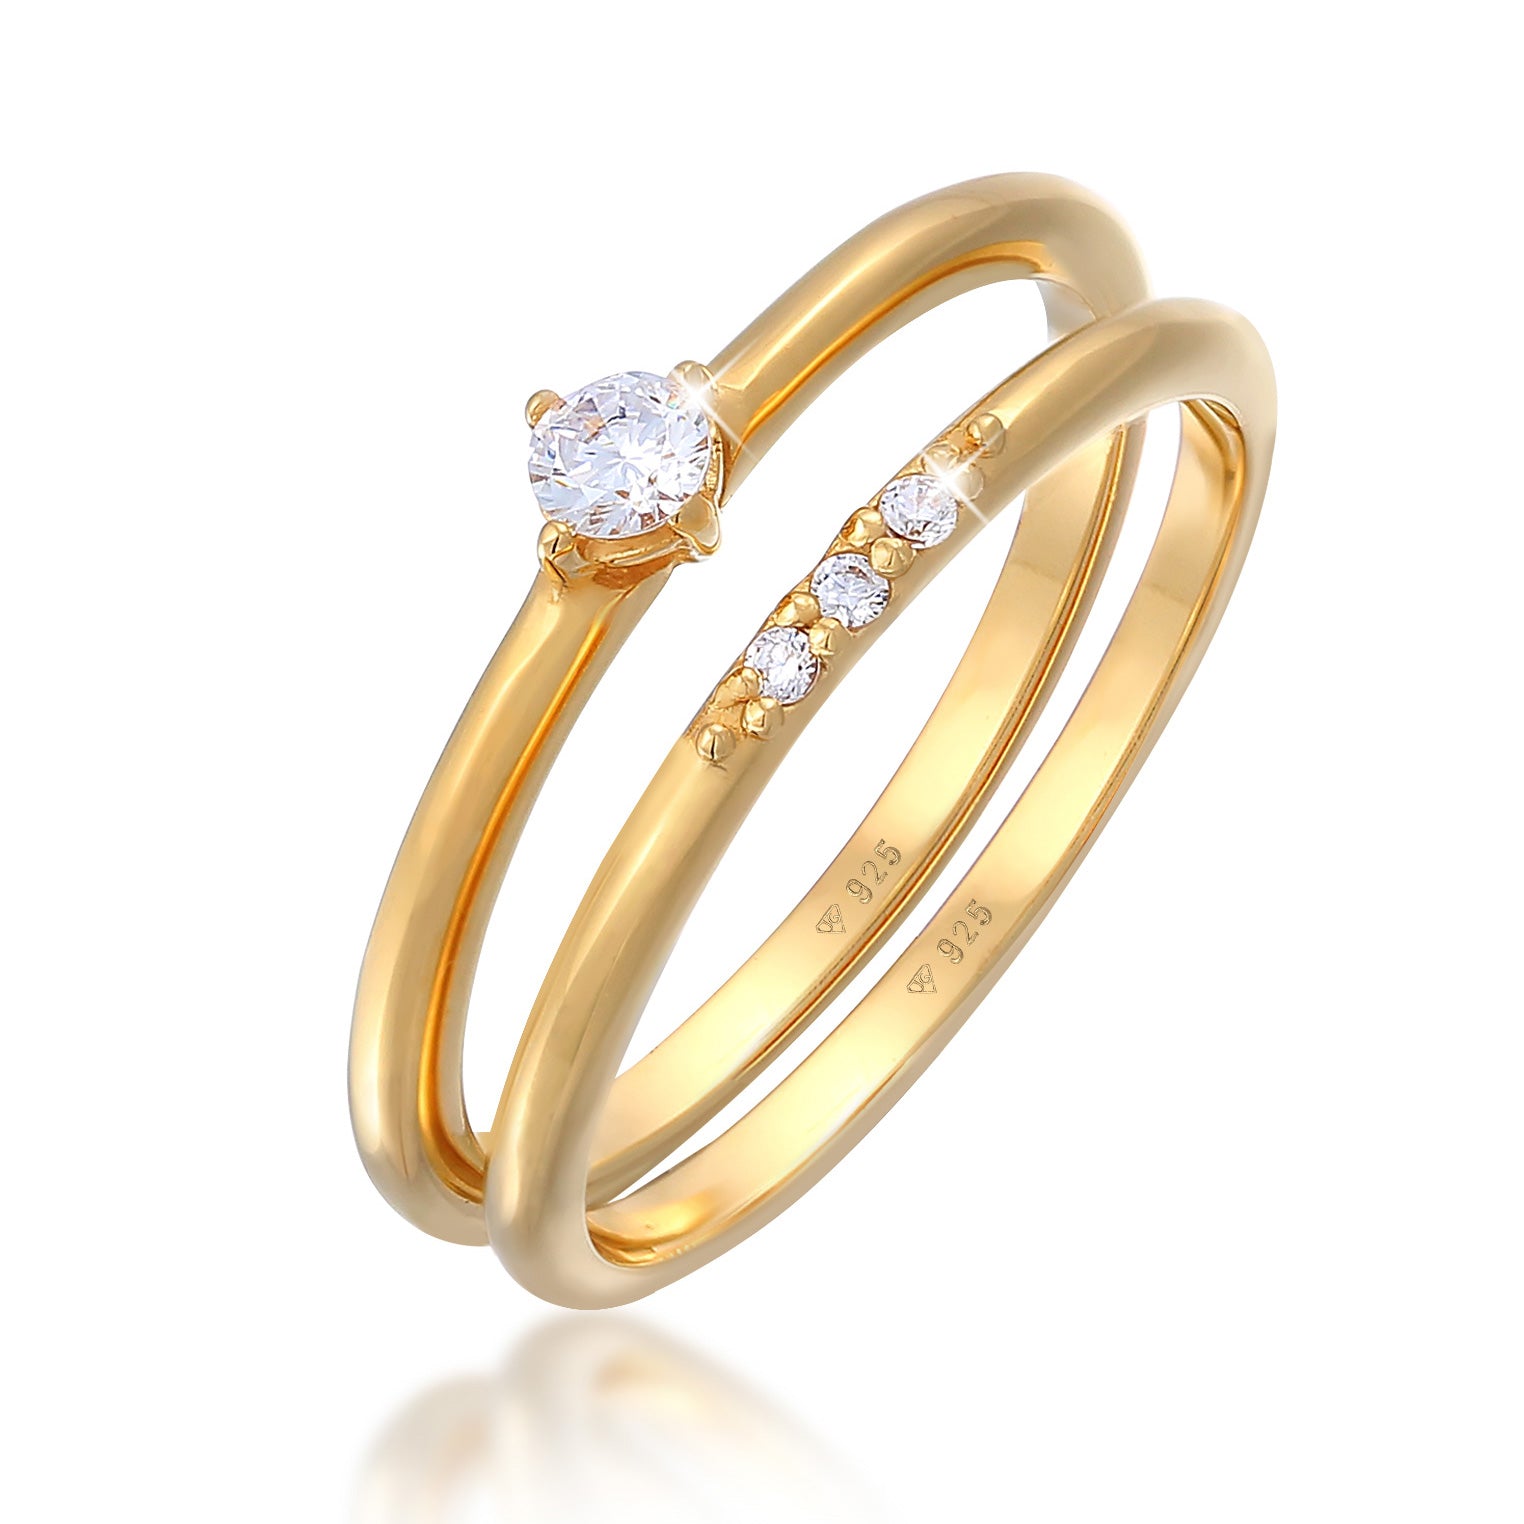 Ringe aus Silber oder Gold | – – kaufen Elli | Auswahl Seite Jewelry 7 Elli bei TOP